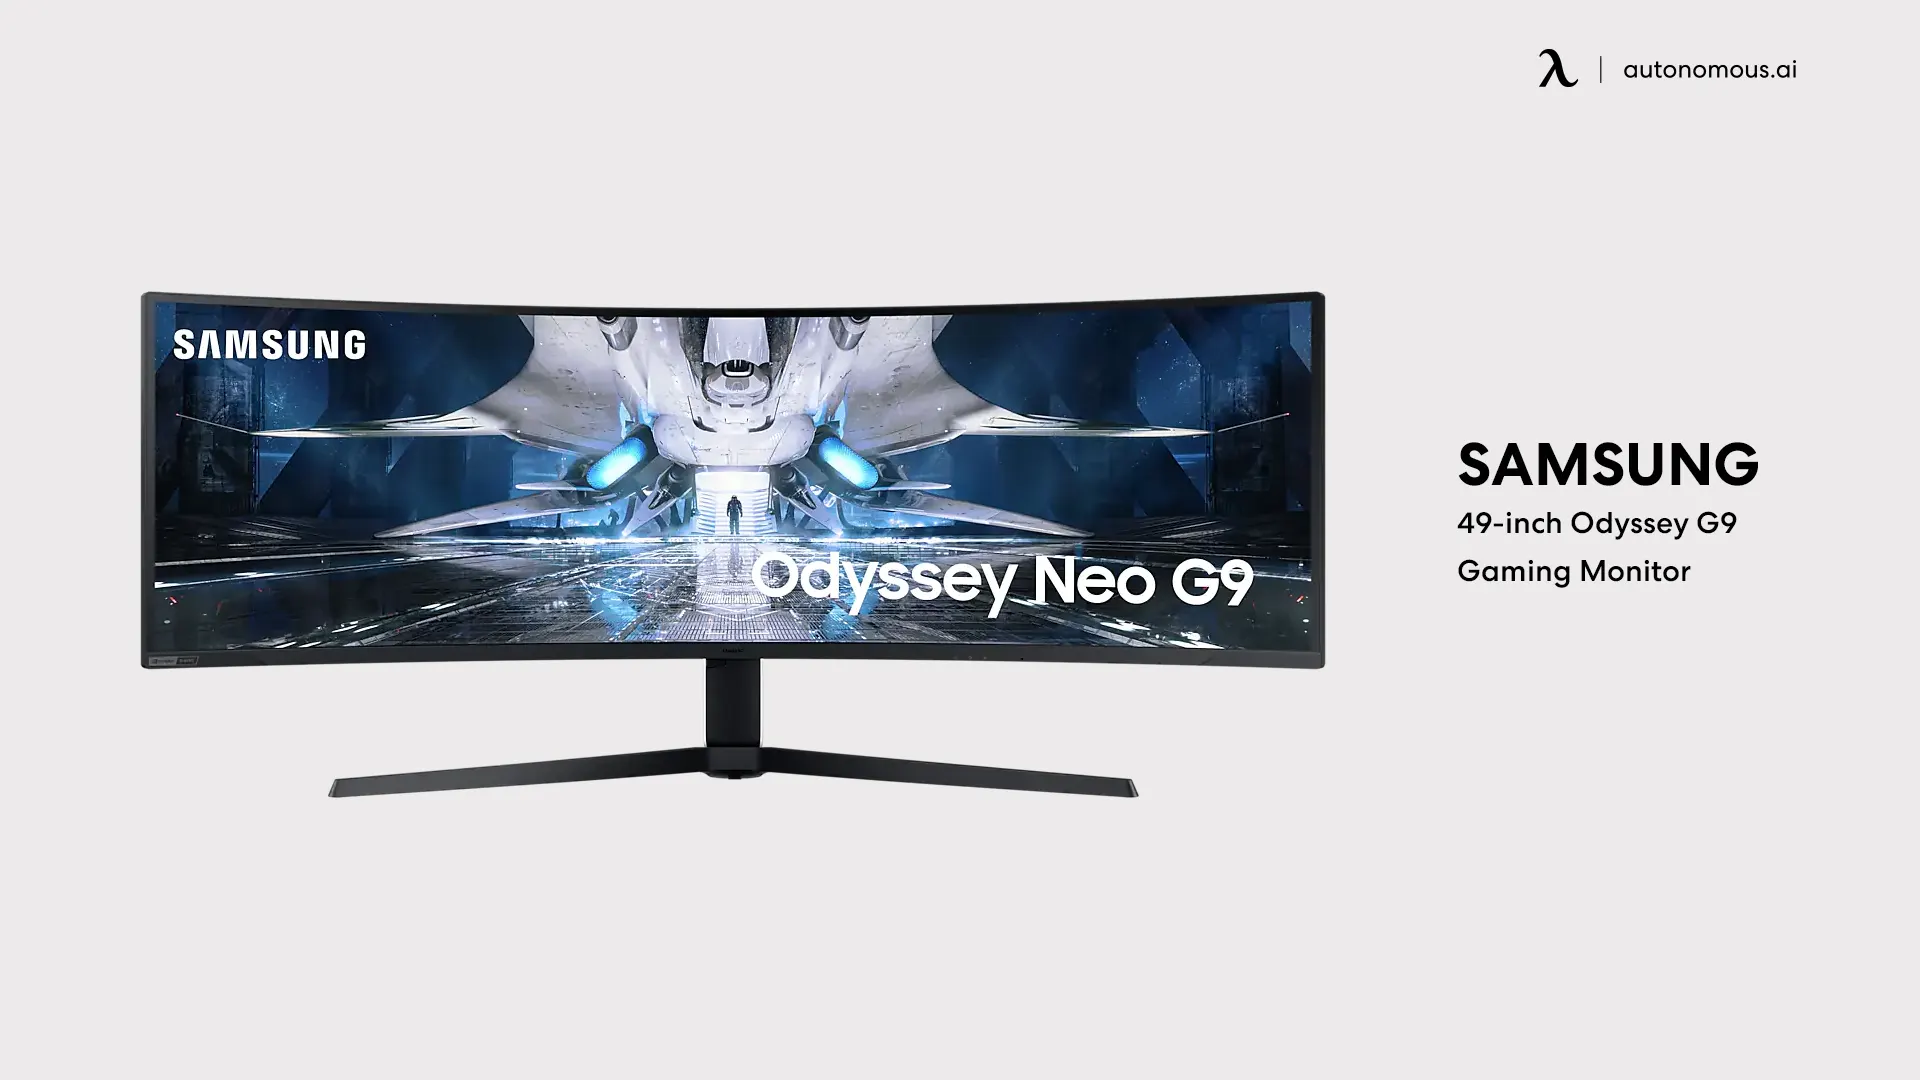 Samsung 49-inch Odyssey G9